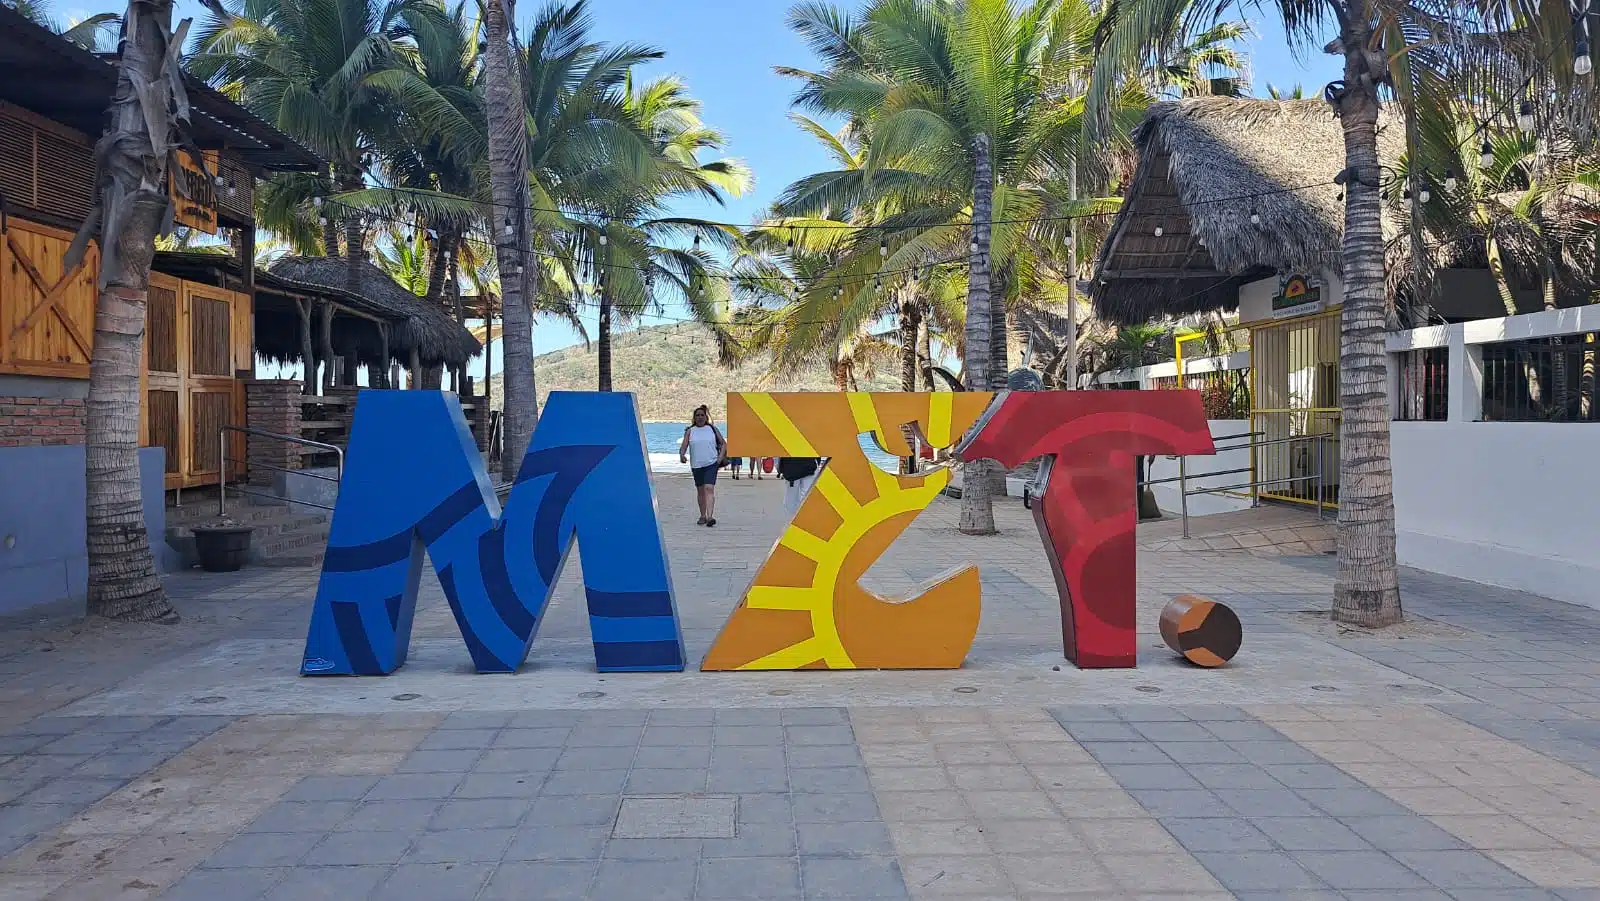 Letras de Mazatlán abreviadas